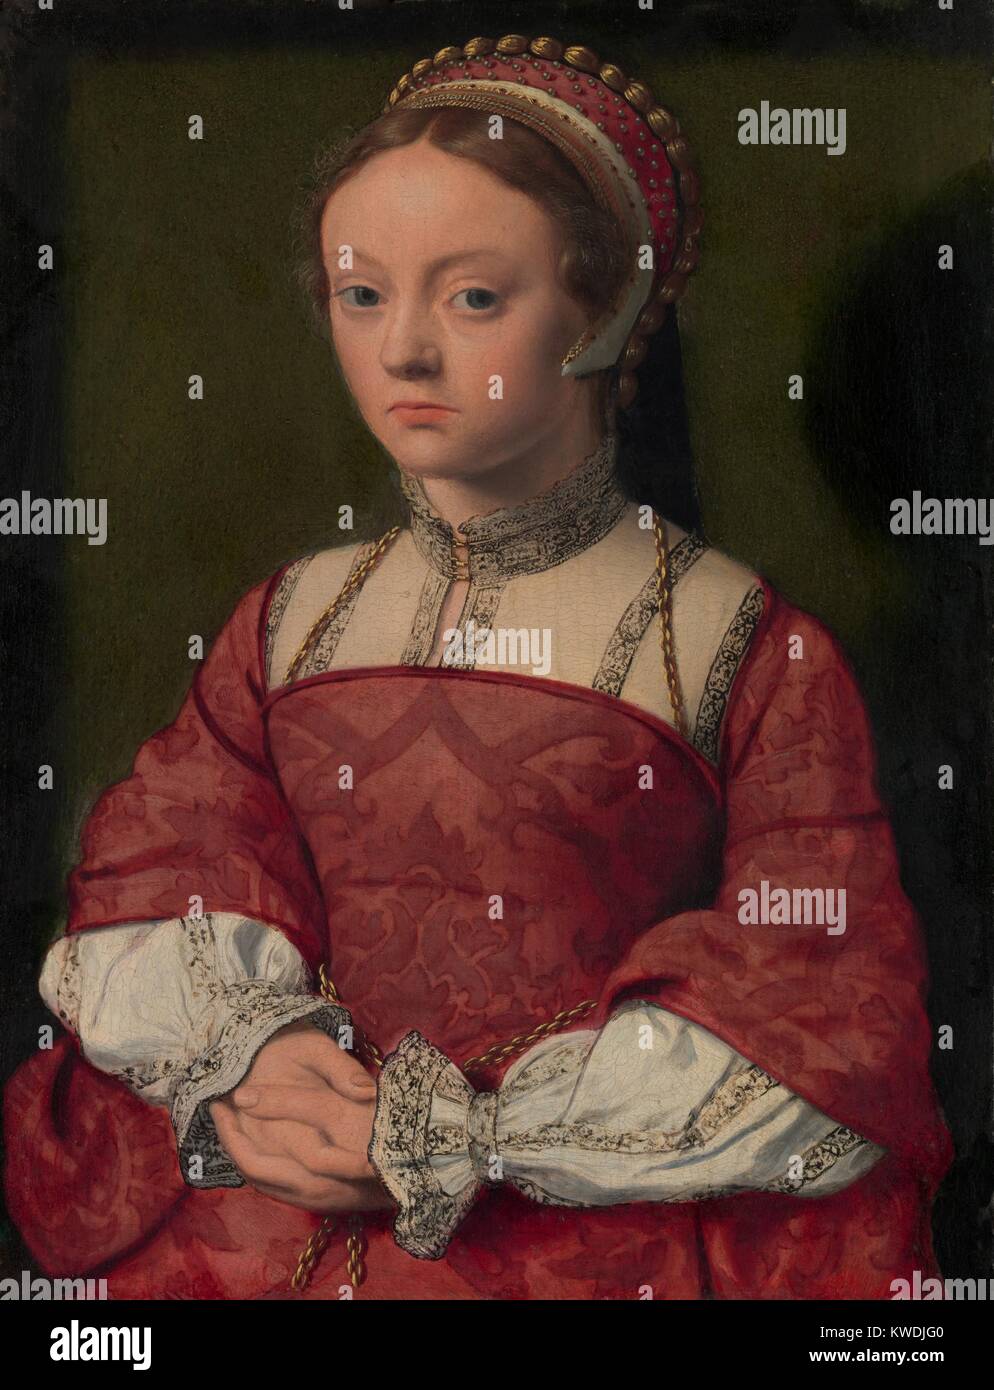 Retrato de una mujer joven, 1535, Netherlandish, Northern Renaissance pintura al óleo. Ella lleva un bordado de alta collared shift bajo un corpiño corsé vestido. Su tapa es adornado con trenza de oro y perlas (BSLOC 2017 16 115) Foto de stock